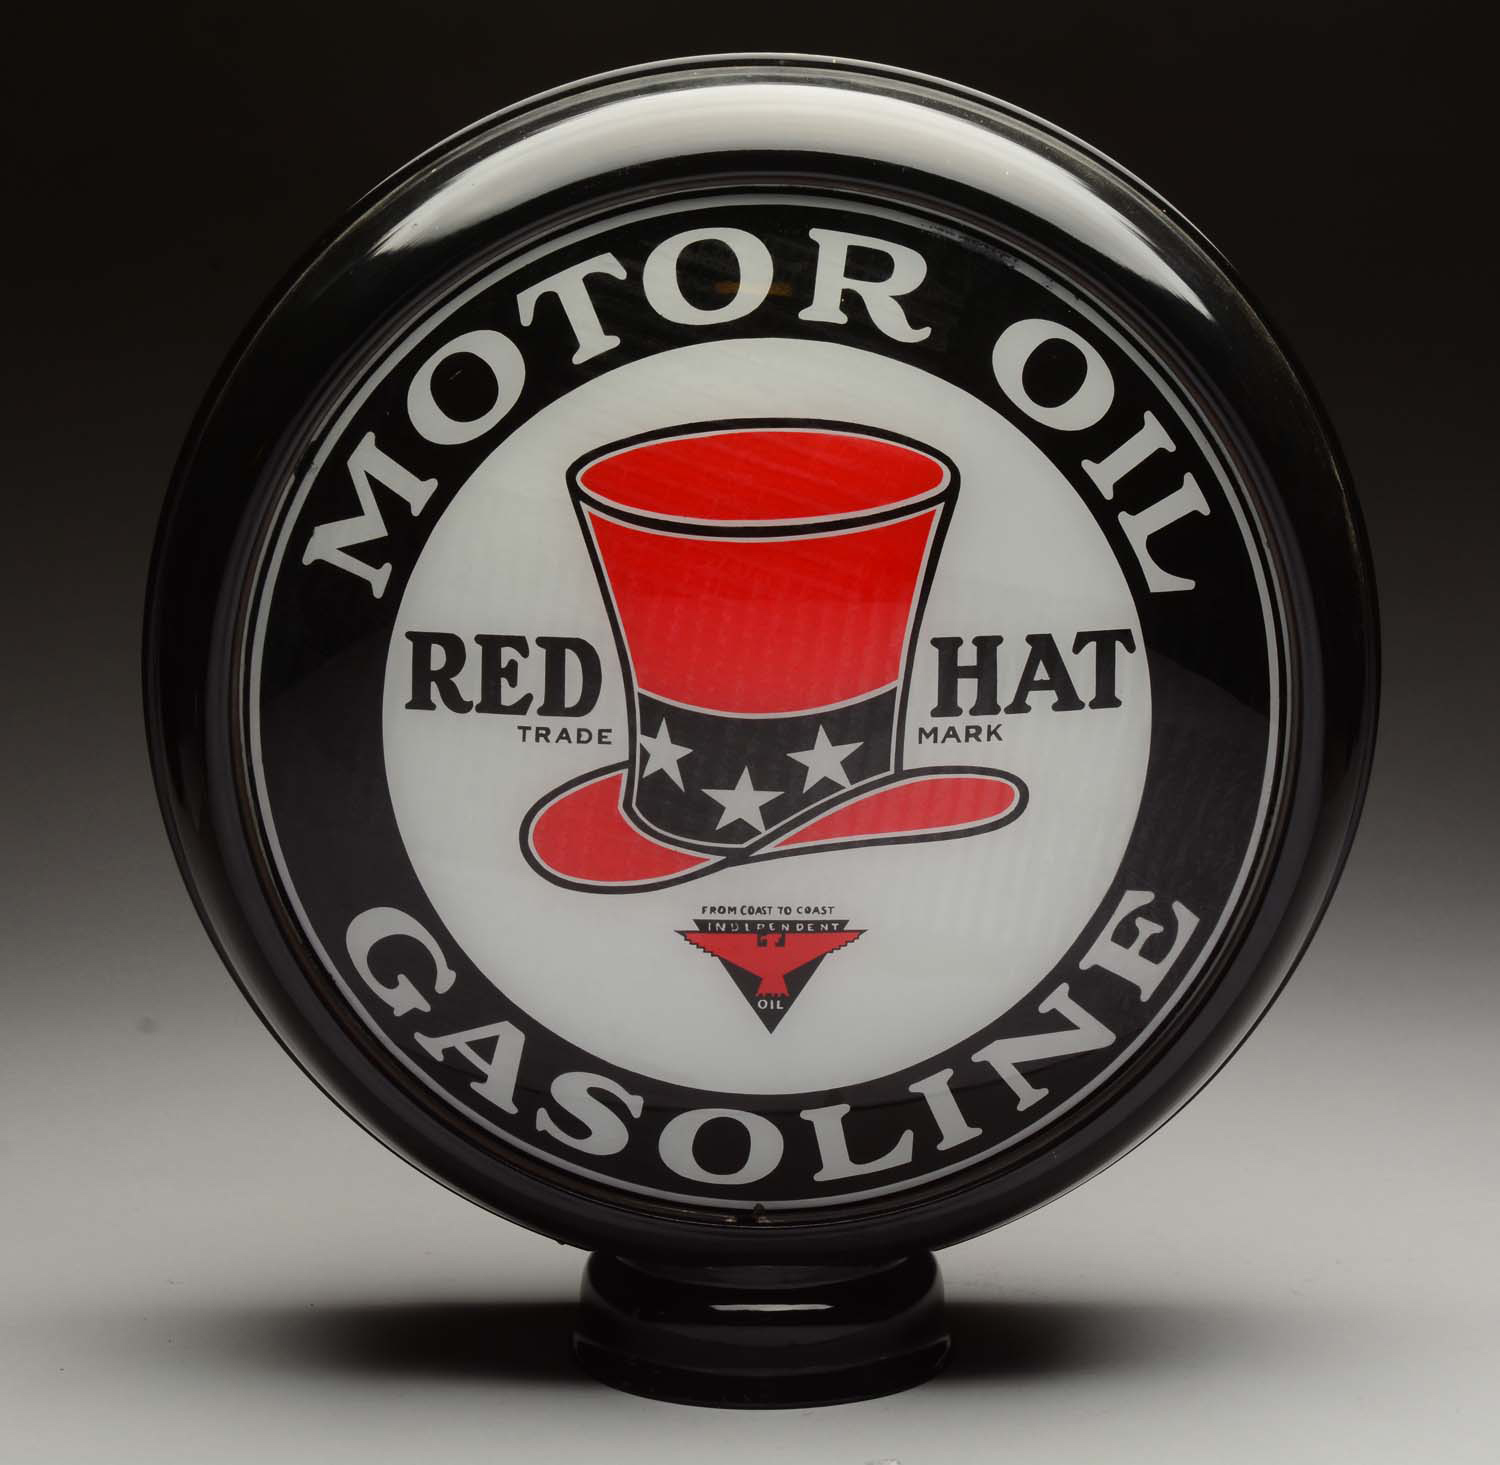 Red Hat Motor Oil Gasoline 15" Globe Lenses, Estimated at $8,000-12,000.